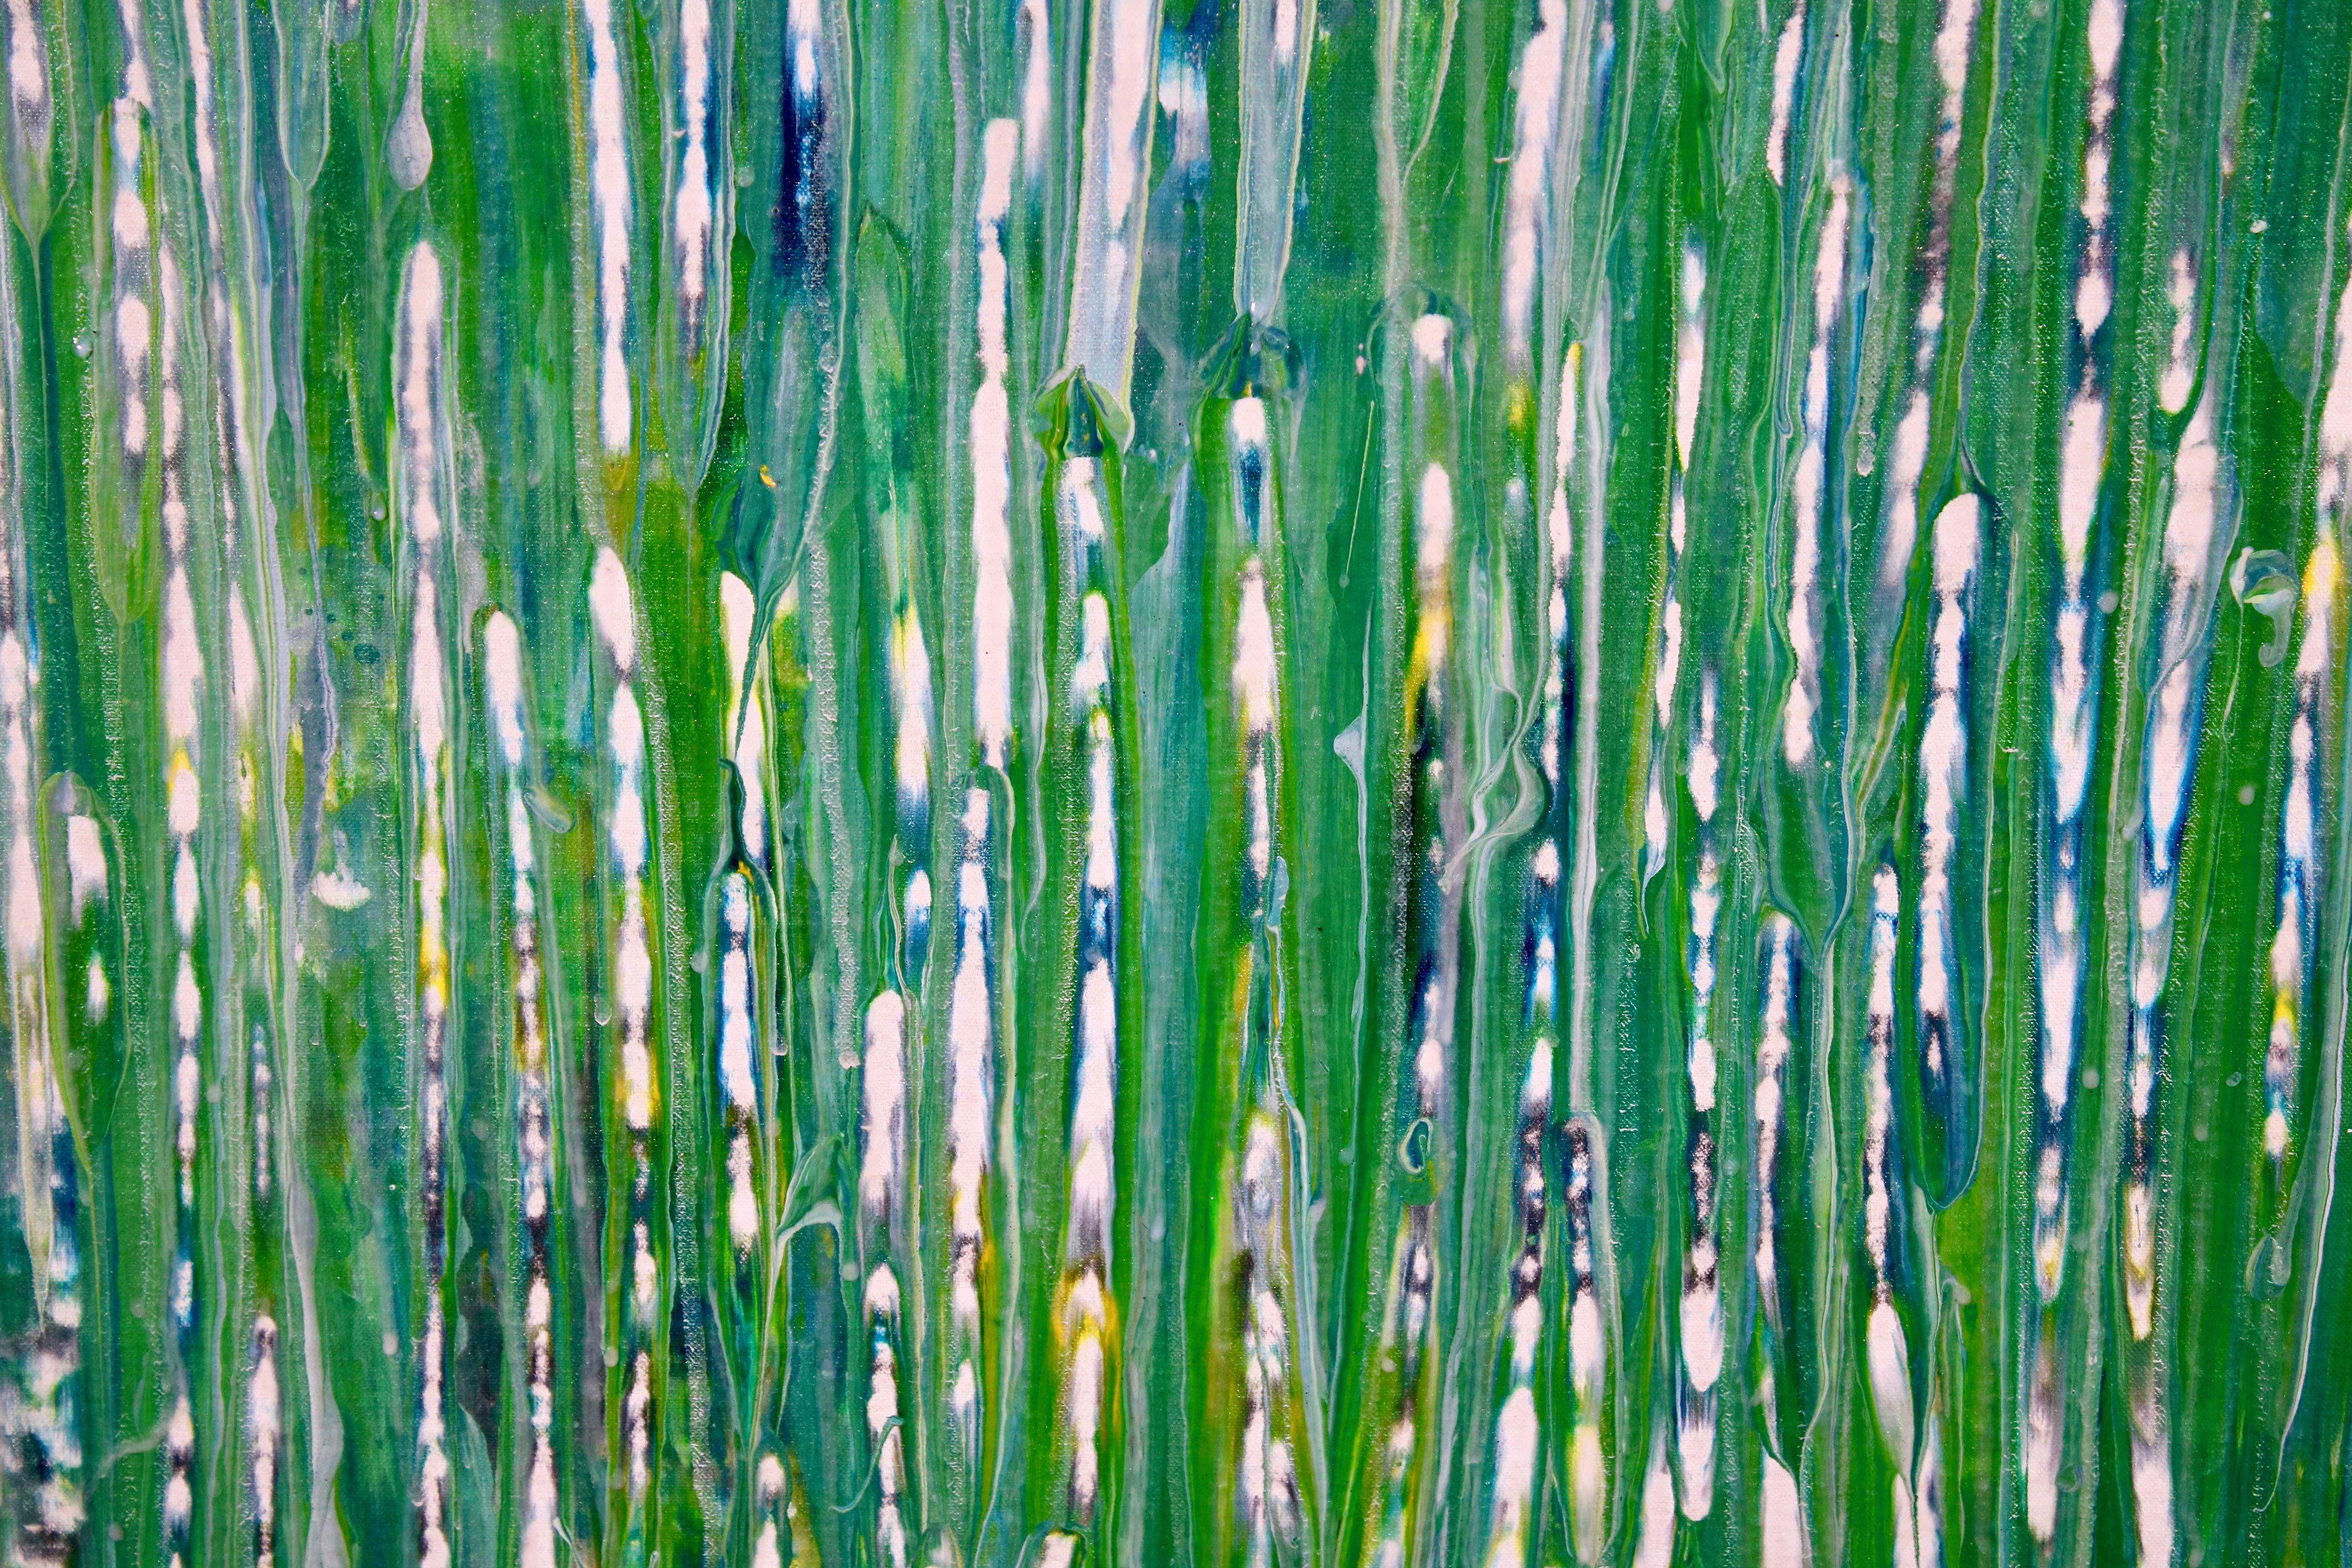 Un regard plus attentif - Forêt chatoyante, peinture, acrylique sur toile - Bleu Abstract Painting par Nestor Toro